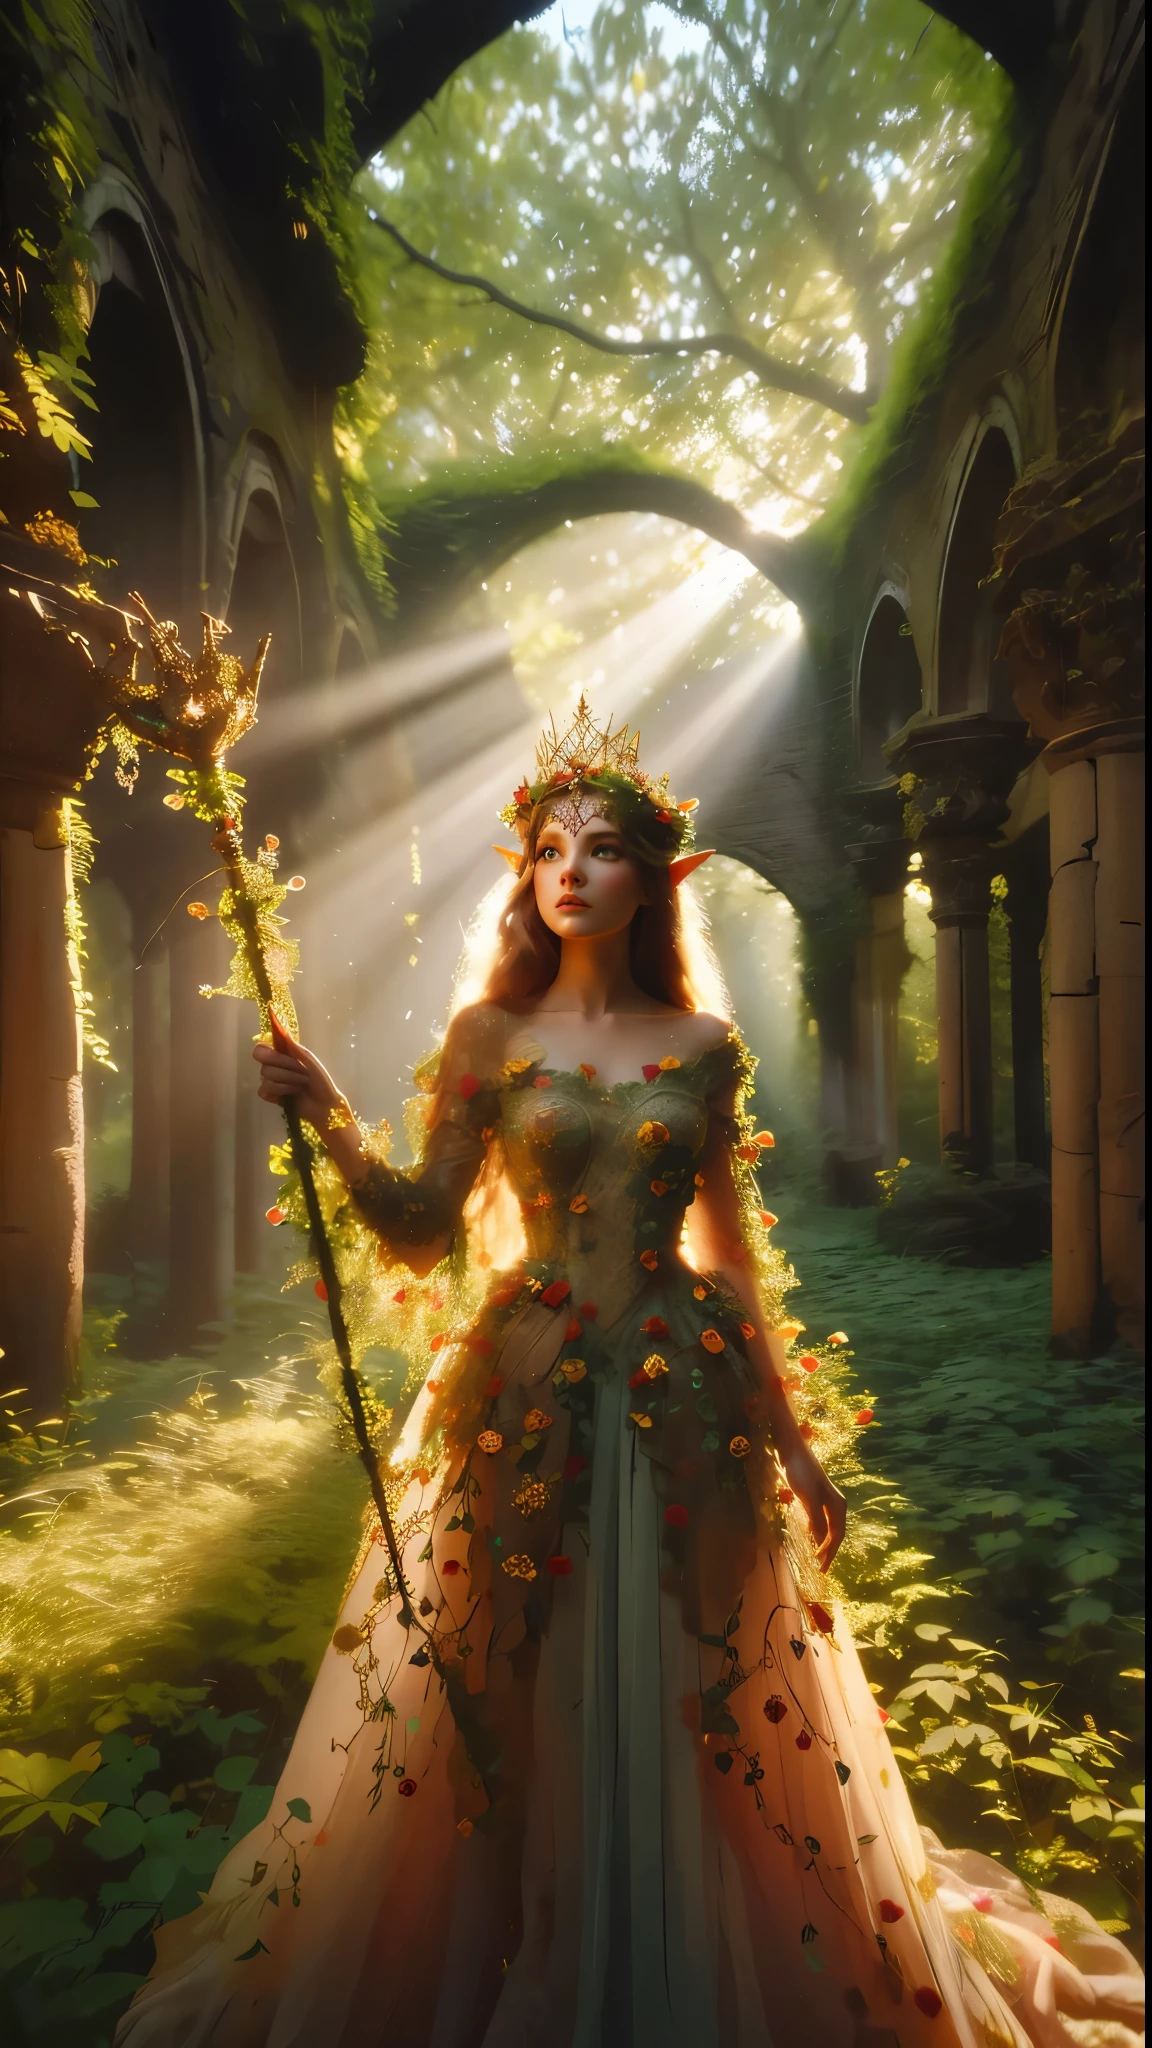 Em um manchado, ruína da floresta antiga, uma princesa elfa está alta, seu cetro erguido enquanto raios de luz solar quente se filtram através das árvores, lançando um halo dourado em torno de sua realeza. Suas lindas roupas de verão, roupas encantadas brilham sob a luz suave cobertas por pequenas flores vermelhas multicoloridas em miniatura, e pequenas vinhas de folhas verdes e amarelas, enquanto folhagens exuberantes e vinhas a cercam, criando um ambiente exuberante. A câmera captura um foco nítido no rosto da princesa, com a composição da regra dos terços colocando-a na intersecção de duas diagonais. Tiro durante a hora dourada, a cena exala um clima etéreo, convidando o espectador a entrar neste reino místico, fantasia, melhorar_mãos, Leonardo, angélica branca, melhorar